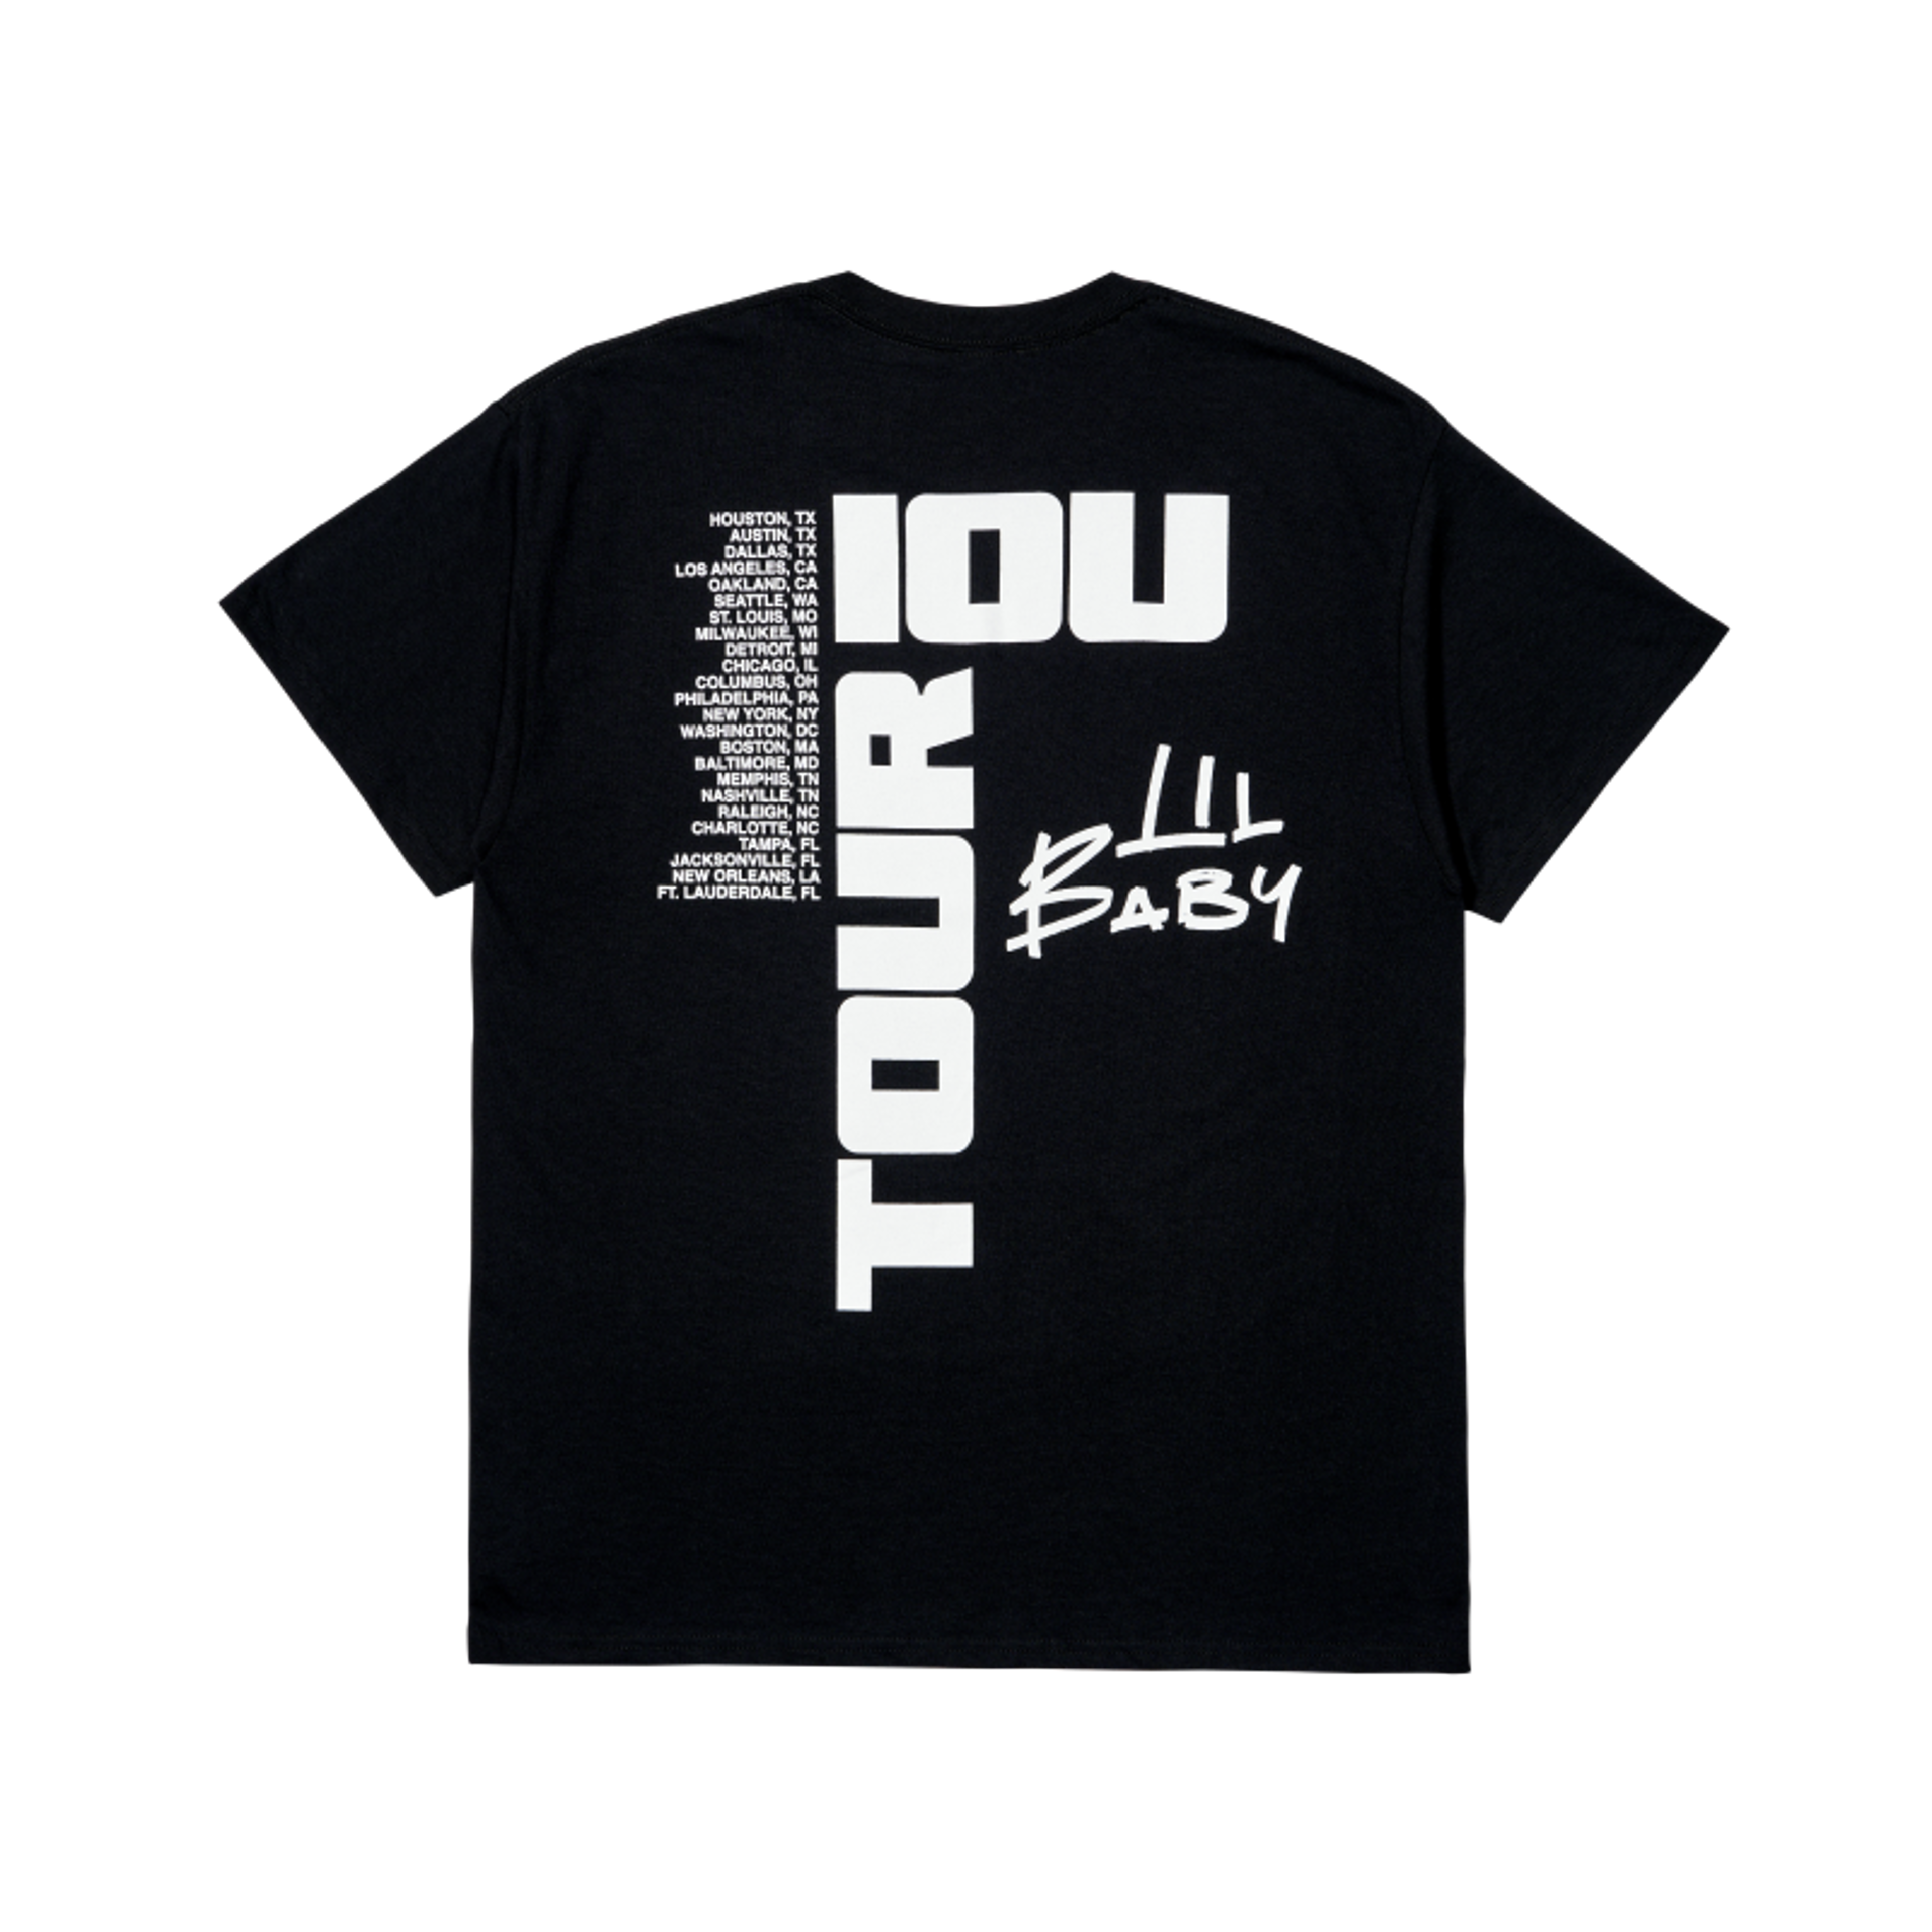 Alternate View 1 of Lil Baby IOU Tour IOU Tee - Black